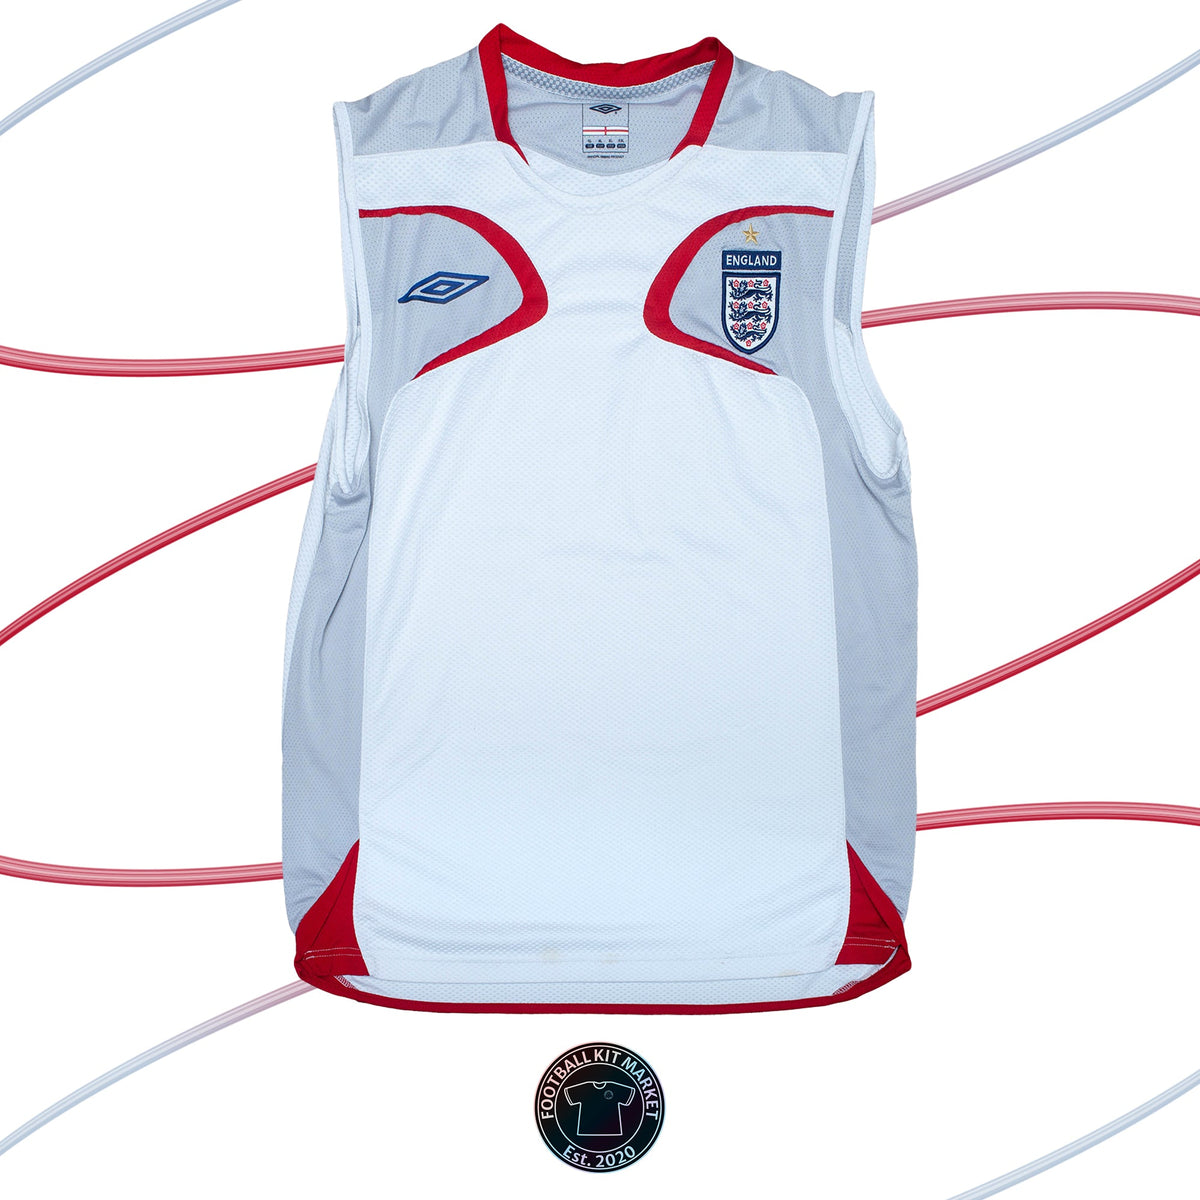 Genuine ENGLAND Training Vest (2006) - UMBRO (XL) - Product Image from Football Kit Market